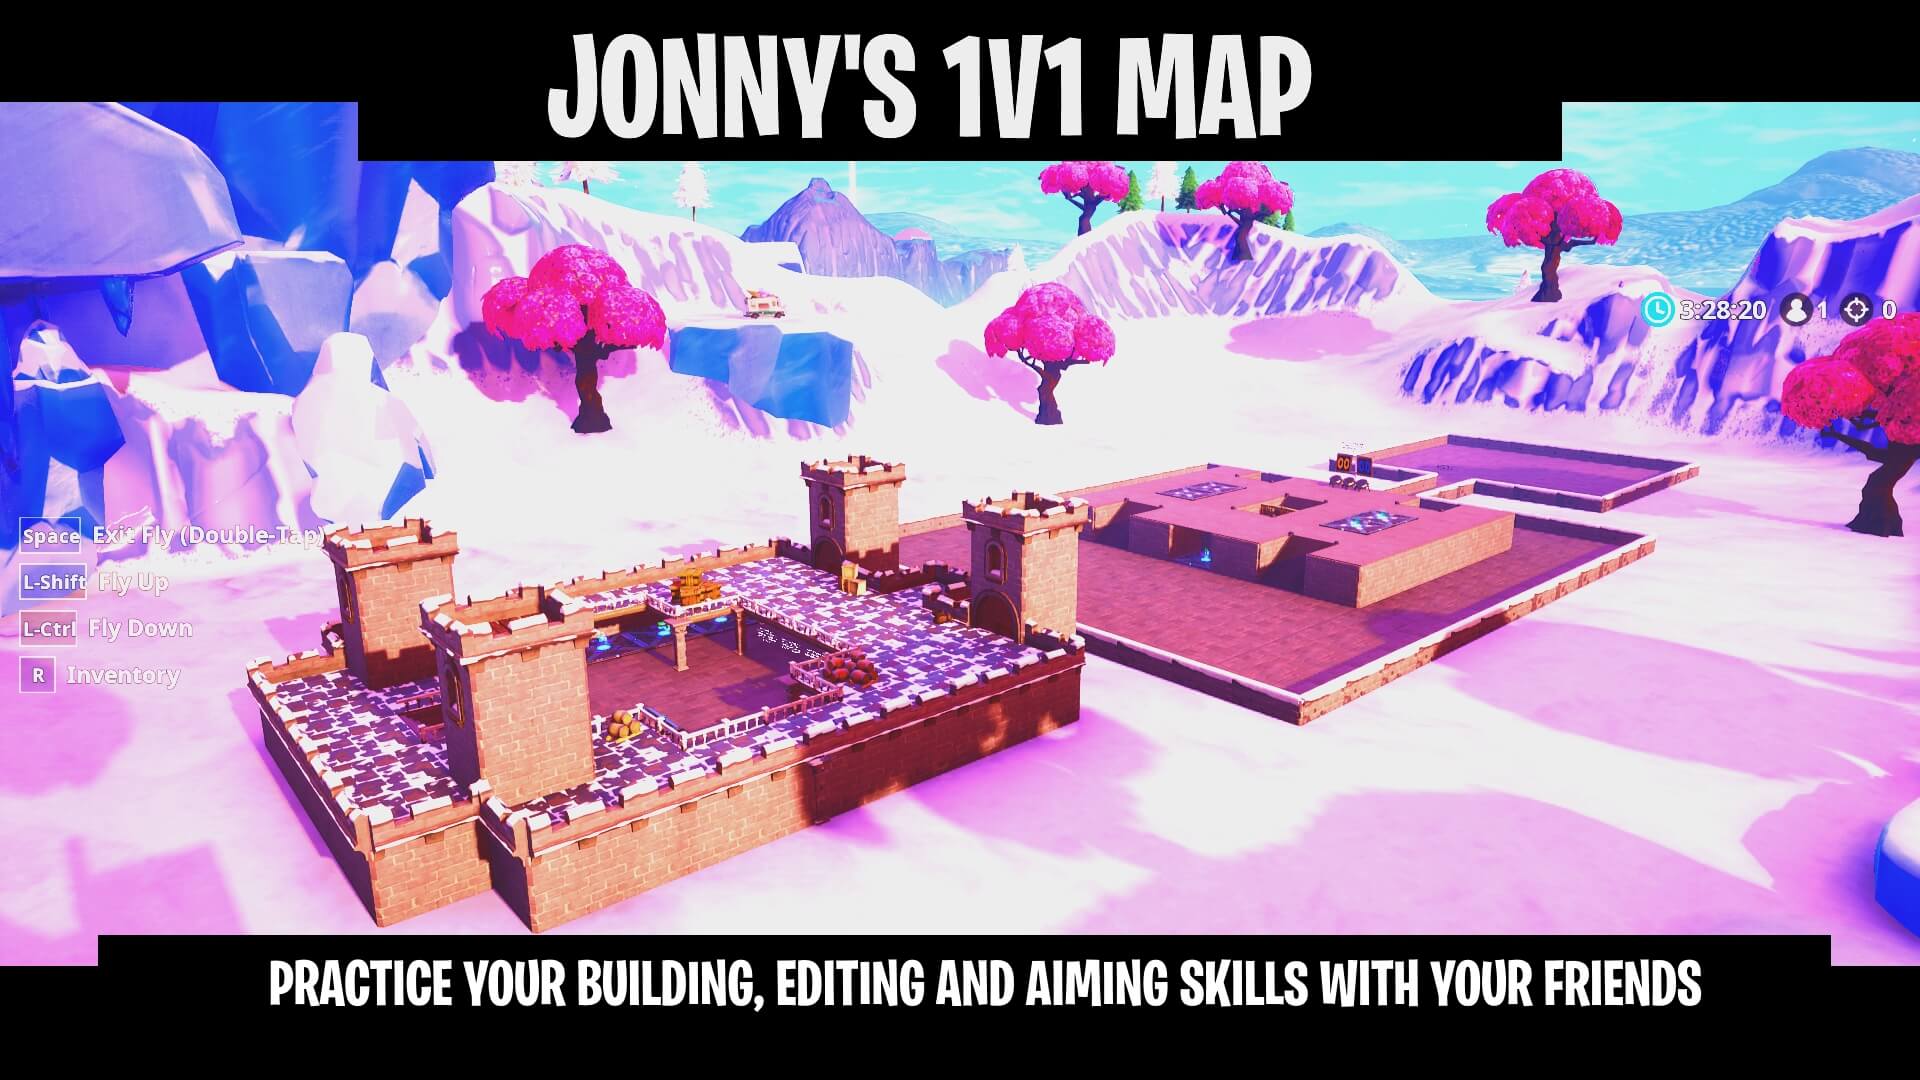 JONNY'S 1V1 MAP